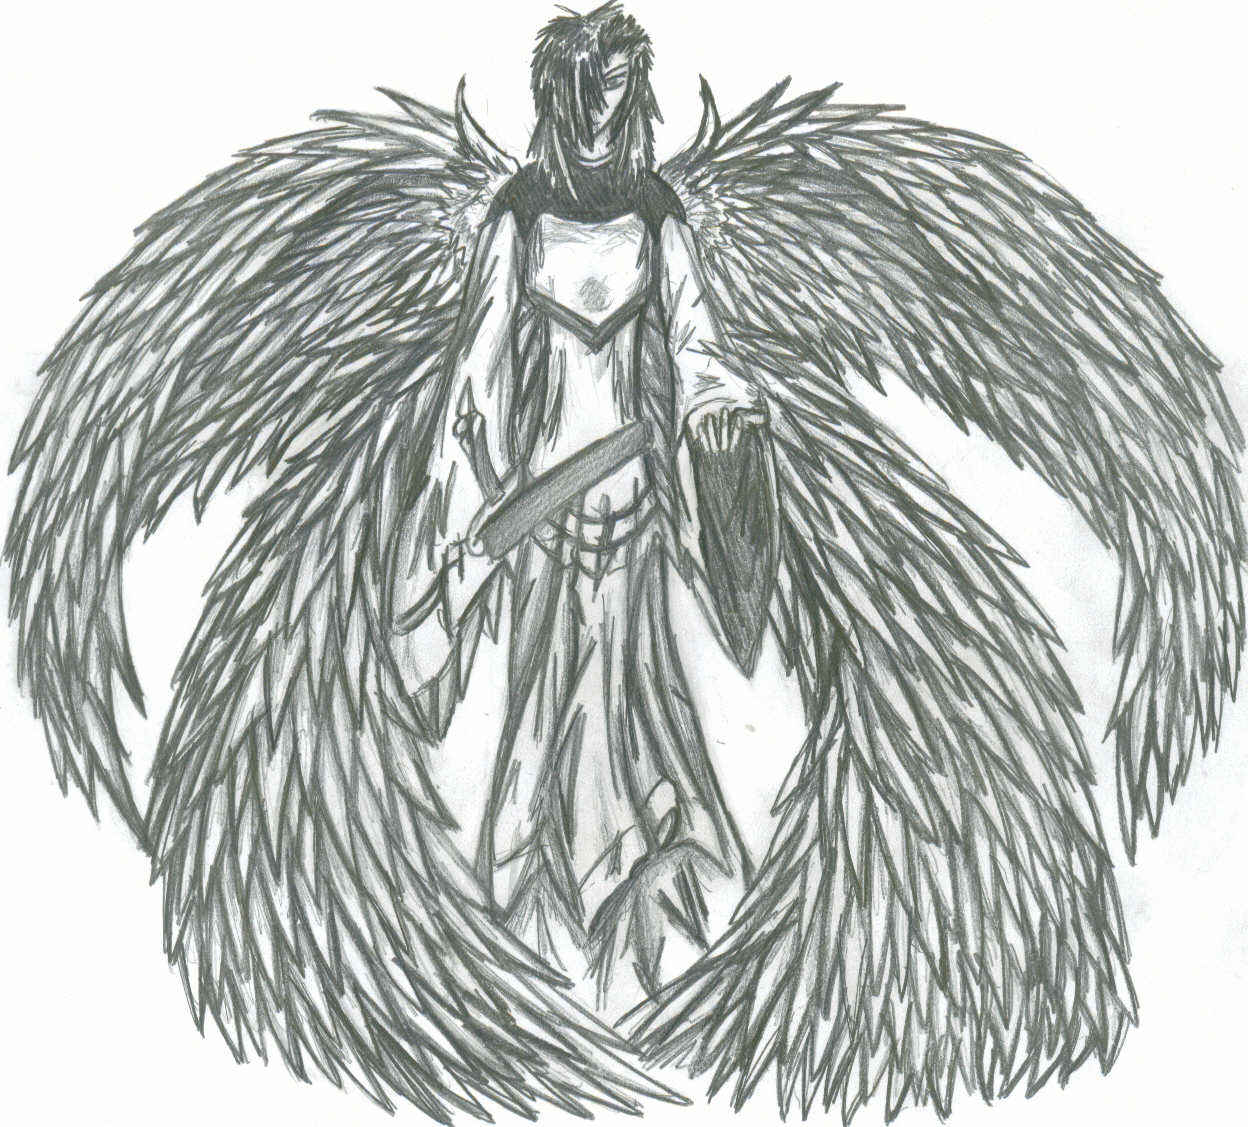 warrior angel ( redone ) by willwolf